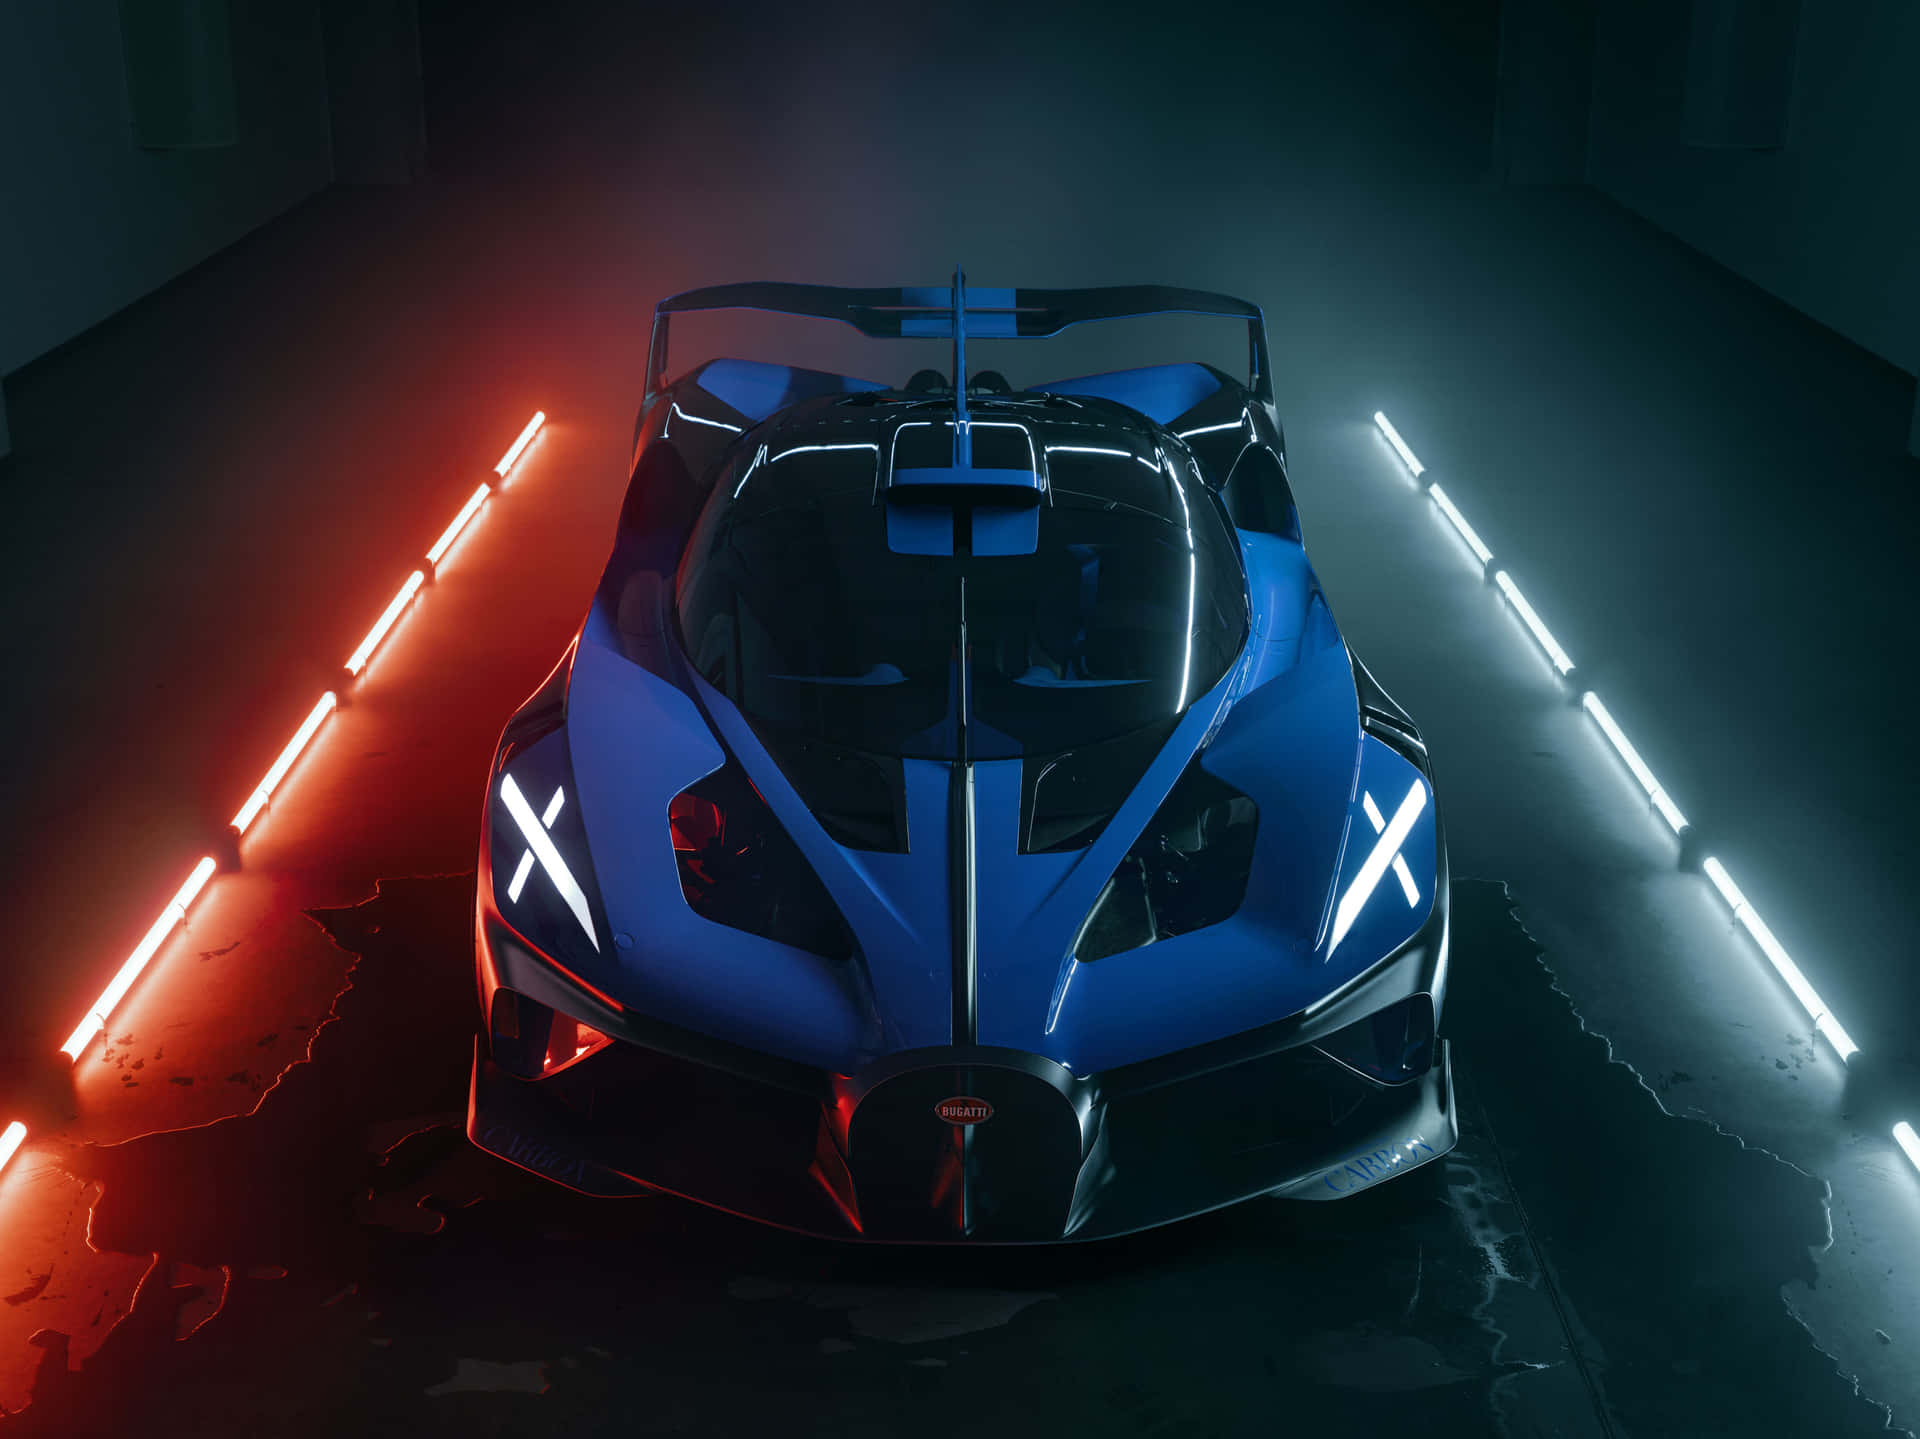 Kryssagenom Natten I Denna Fantastiska Neon Bugatti Som Bakgrundsbild På Din Dator Eller Mobil. Wallpaper